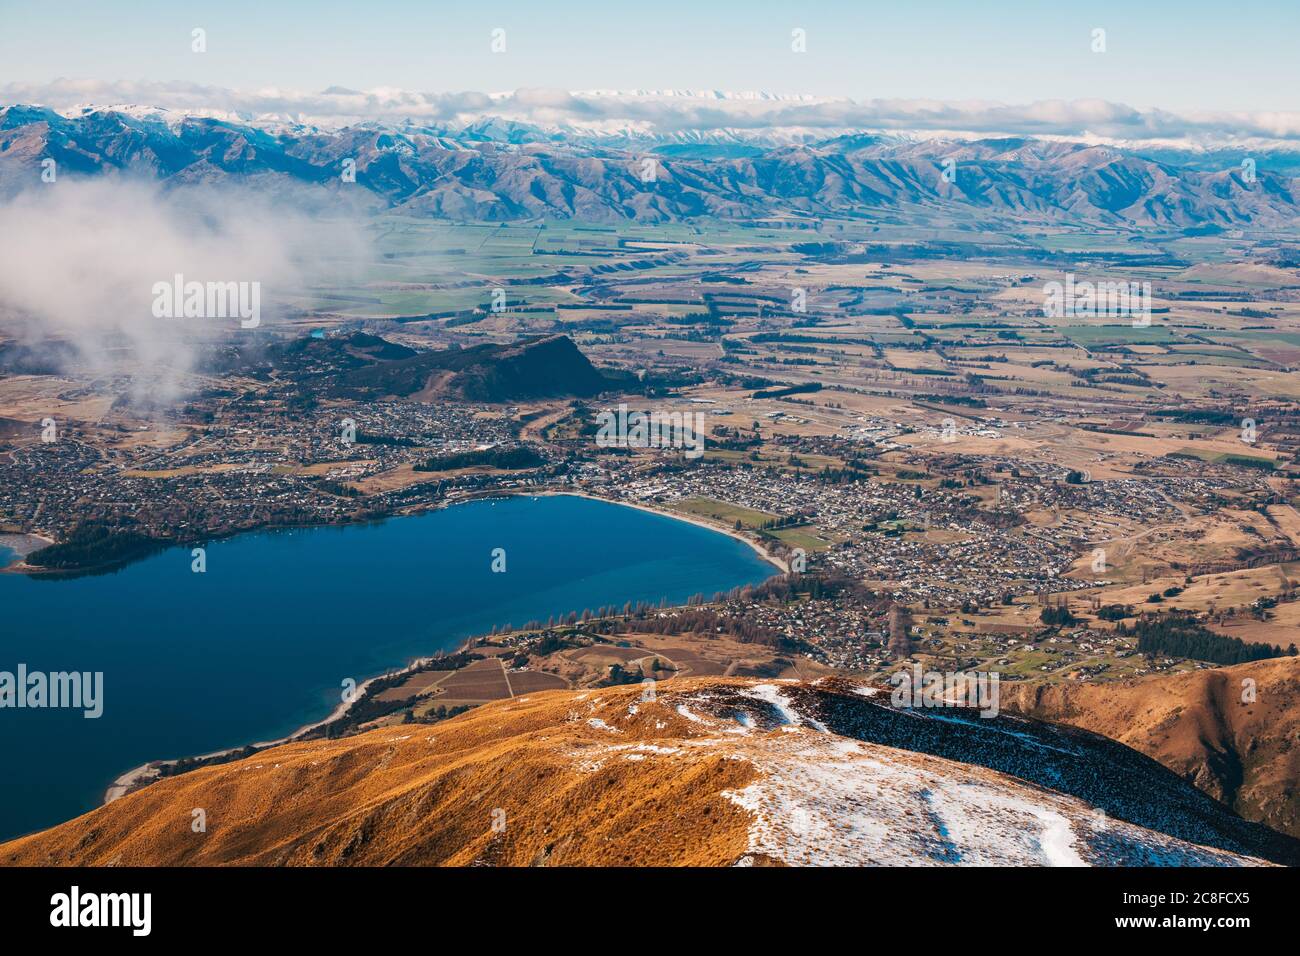 Wanaka township and Lake Wanaka, as seen from Roys Peak, New Zealand Stock Photo